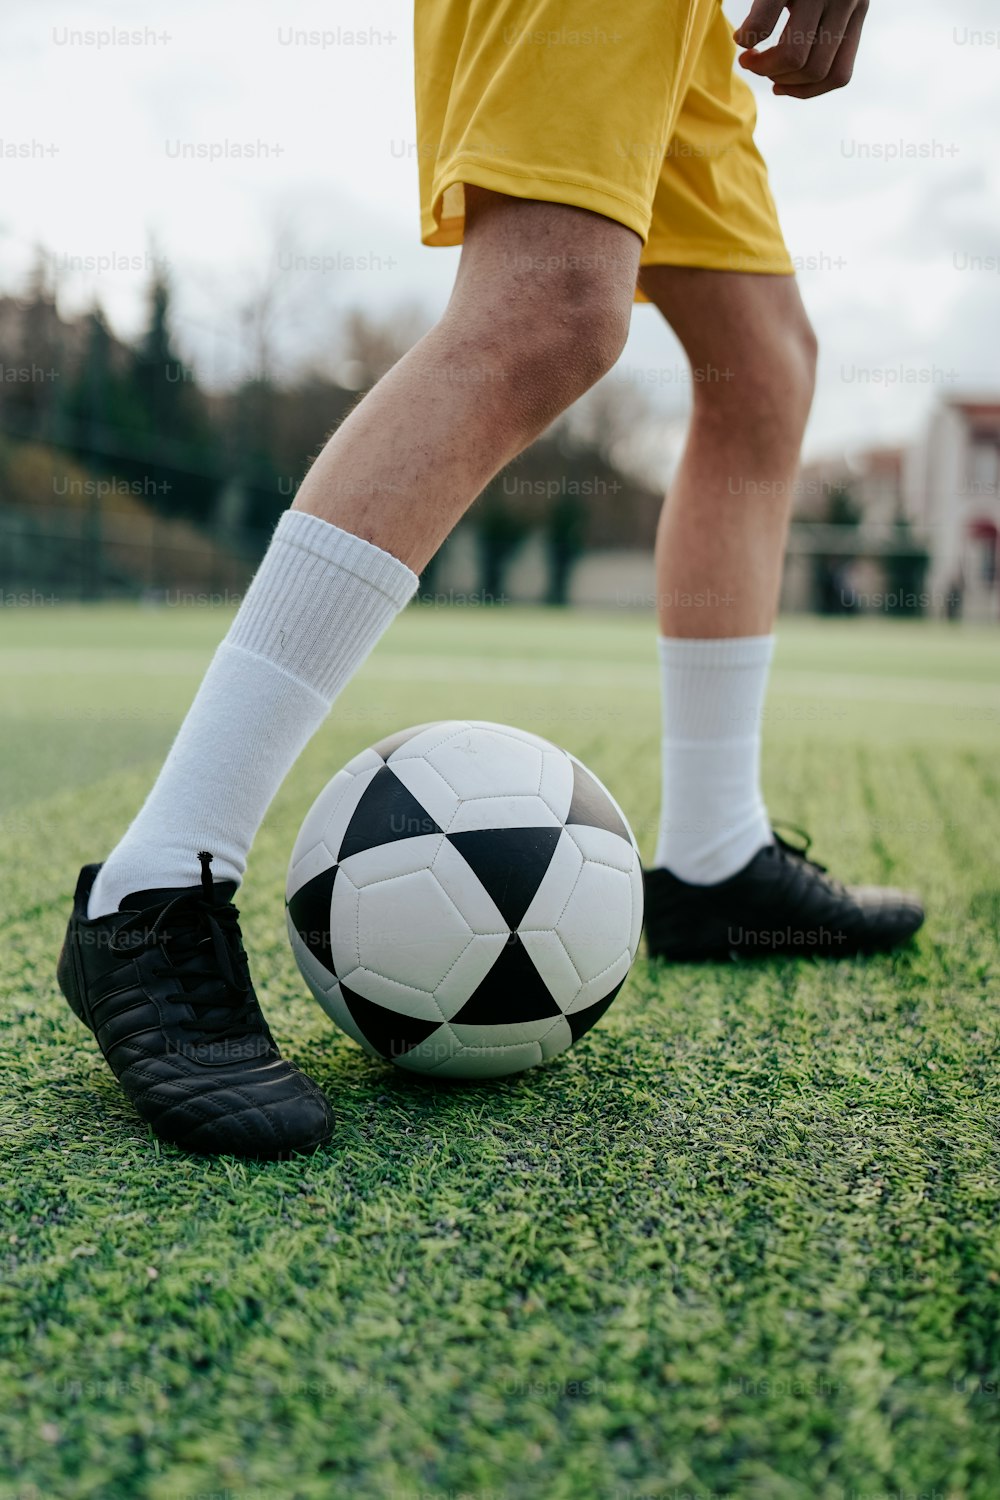 Una persona con pantalones cortos amarillos y zapatos negros pateando una pelota de fútbol